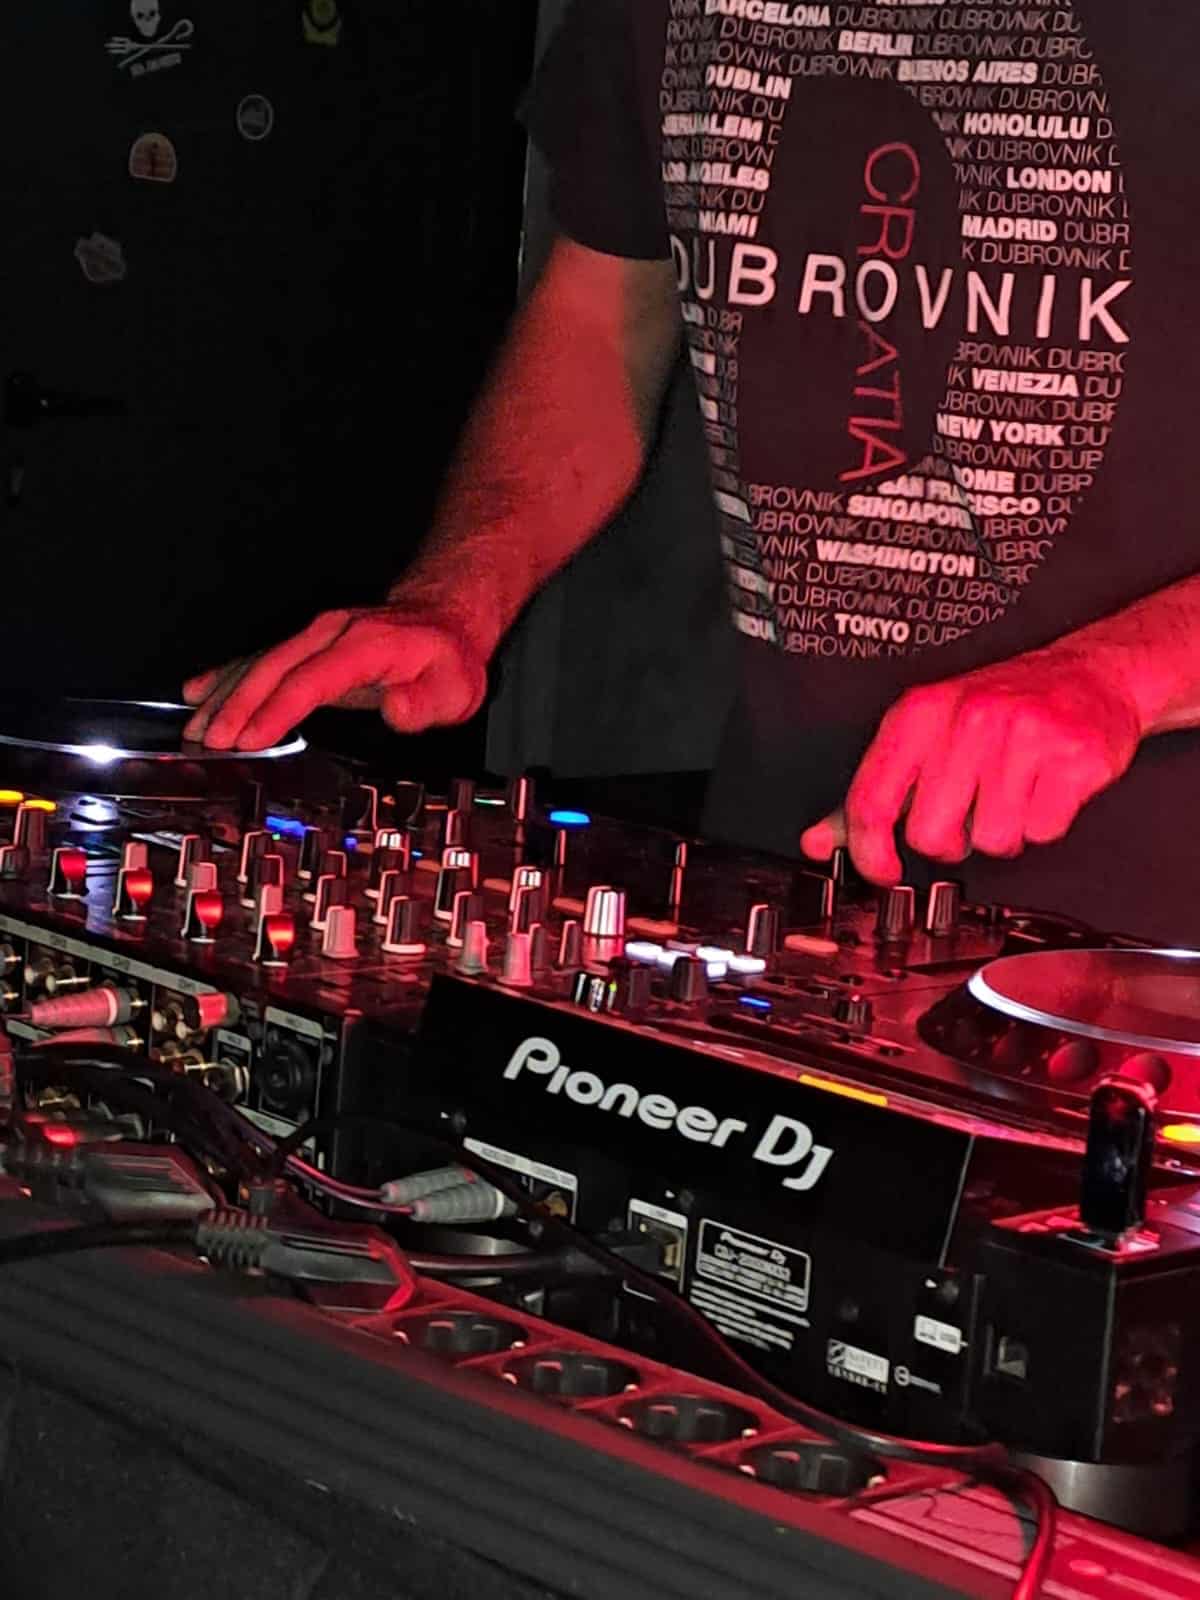 DJ night at Club Dubina Dubrovnik